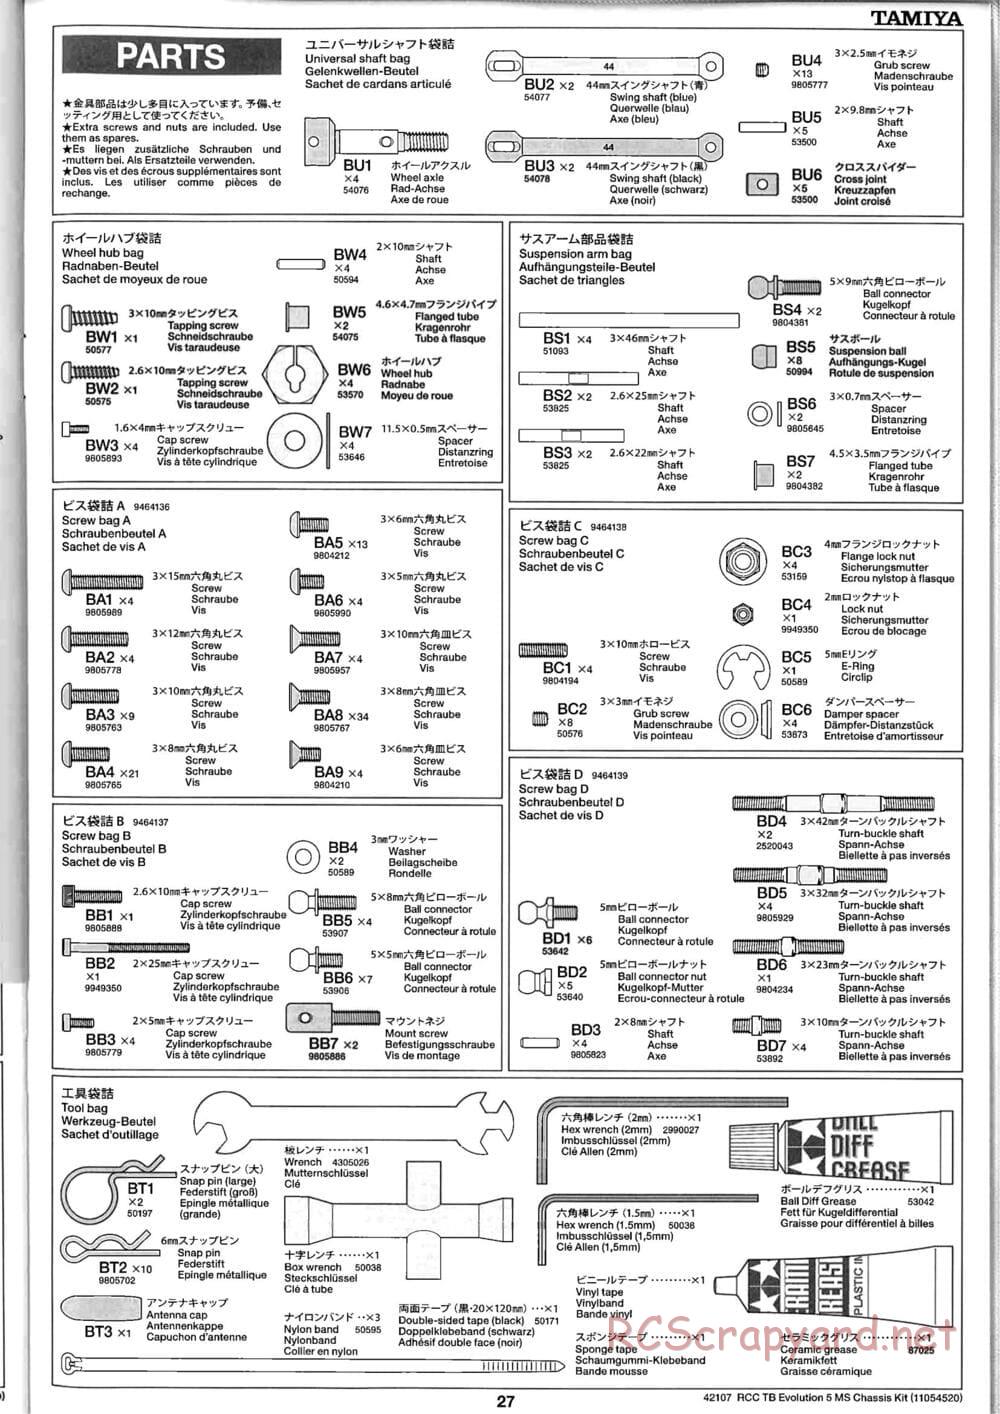 Tamiya - TB Evolution 5 MS Chassis - Manual - Page 27